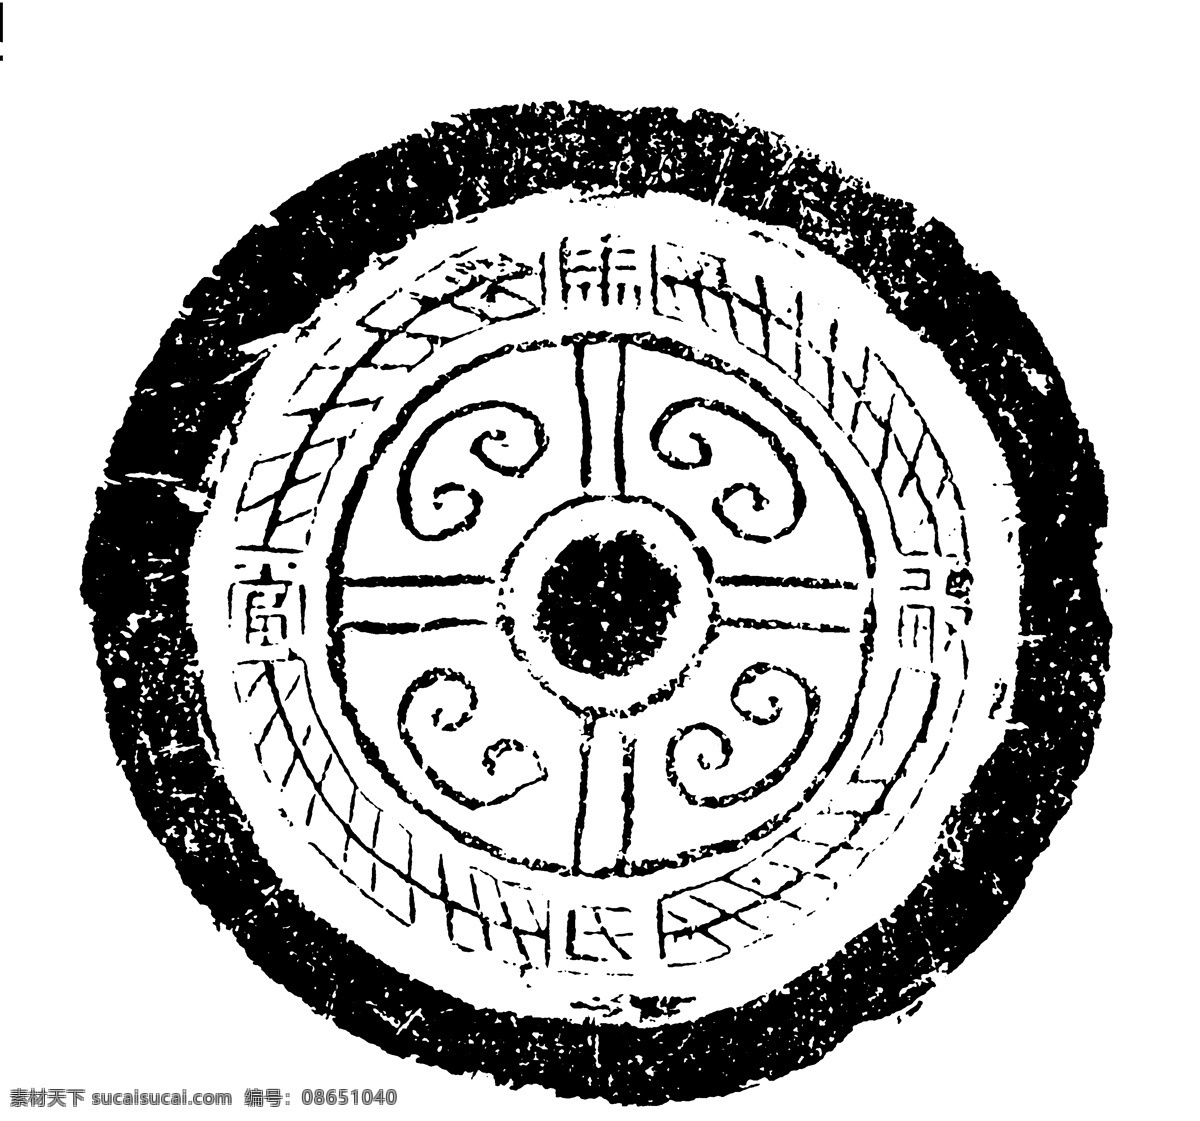 瓦当图案 秦汉时期图案 中国传统图案 图案132 图案 设计素材 瓦当纹饰 装饰图案 书画美术 白色